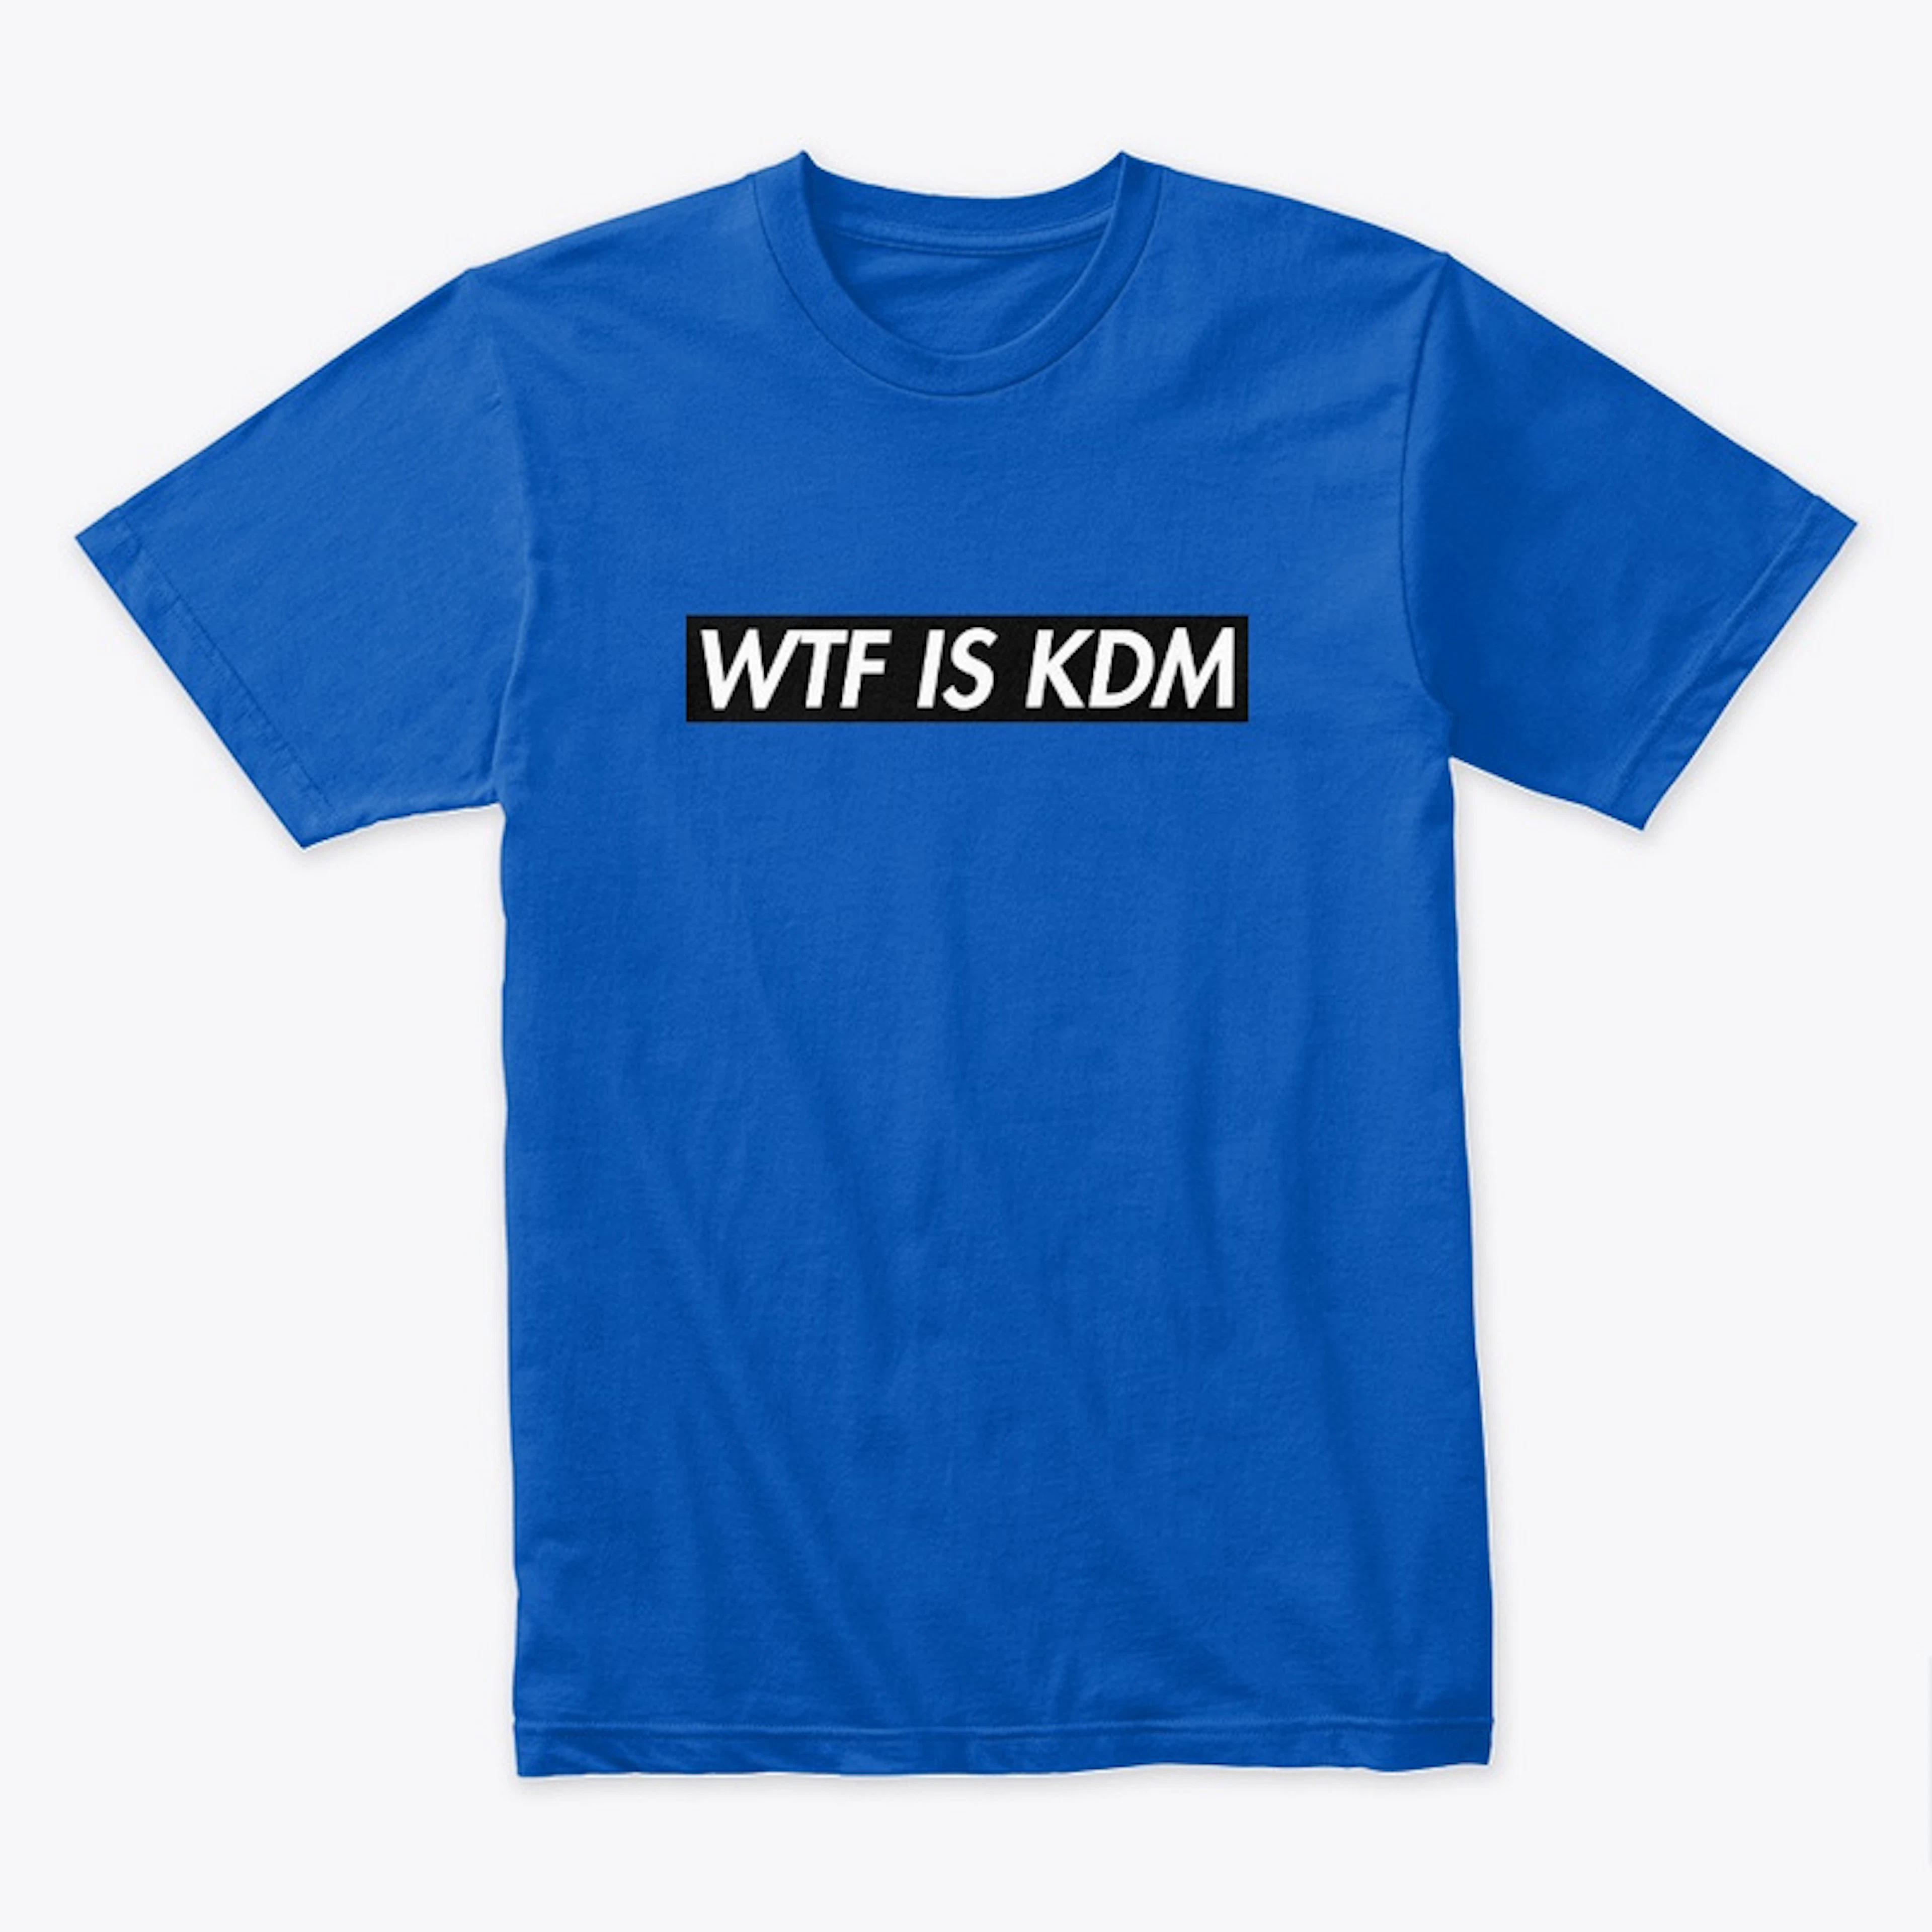 WTF IS KDM - Black Version